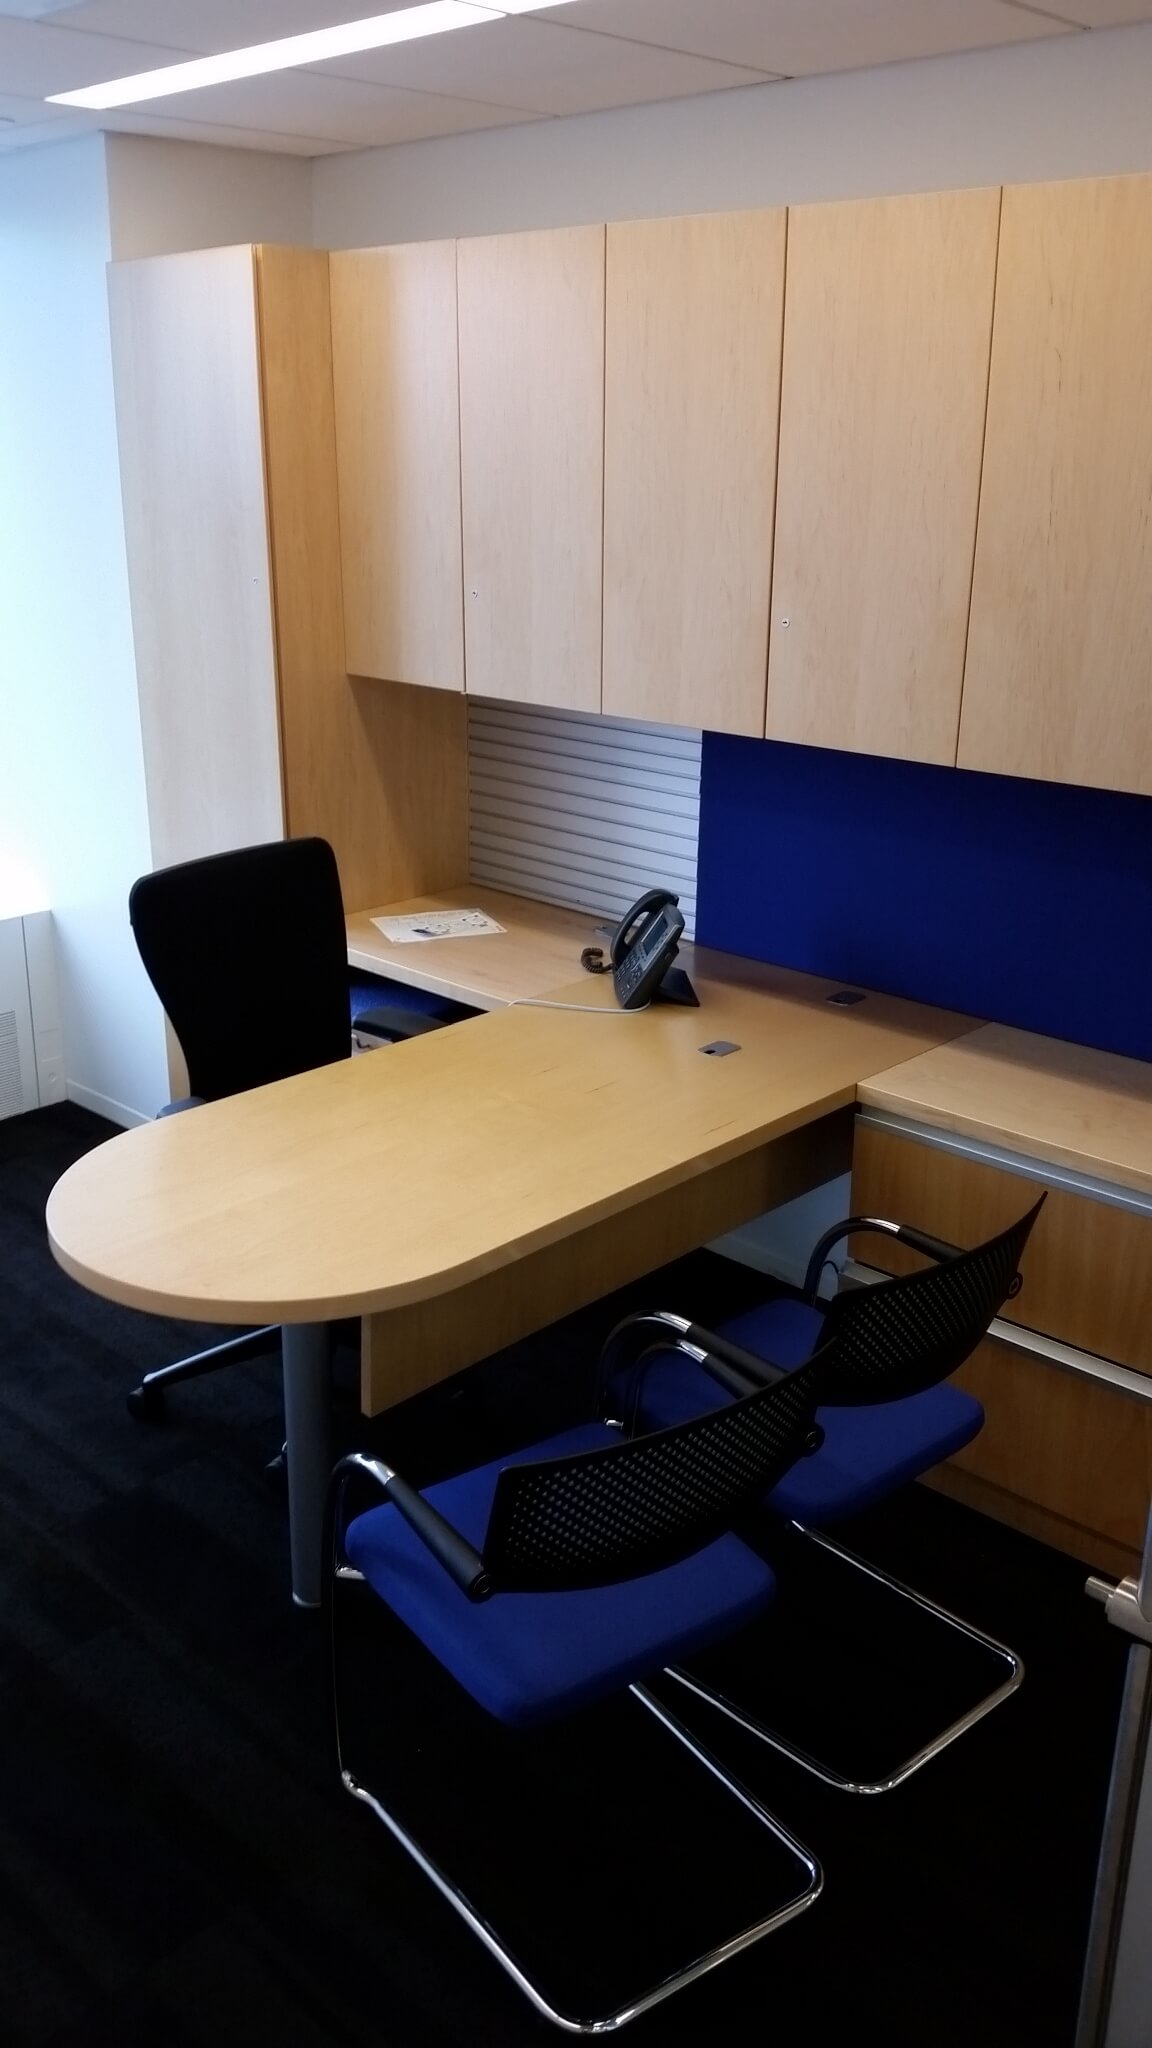 Knoll Desk Sets - Excellent condition